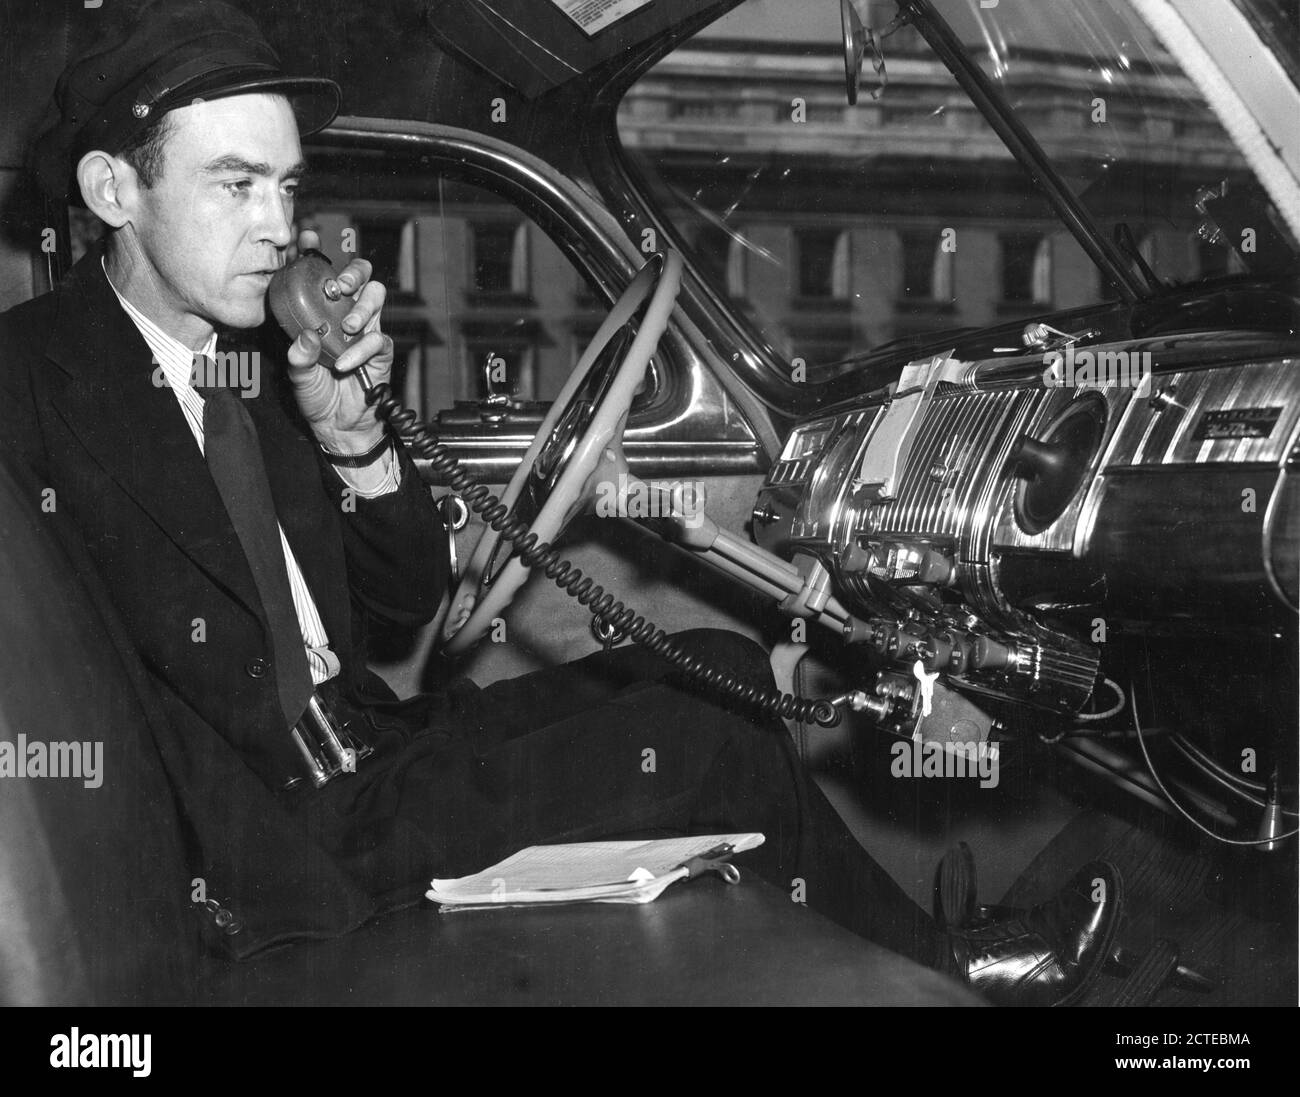 Larry Weatherly, chauffeur de Yellow Cab Company, parle à un répartiteur de compagnie par radio professionnelle, Washington, DC, 4/1949. (Photo du Département d'État des États-Unis/RBM Vintage Images) Banque D'Images